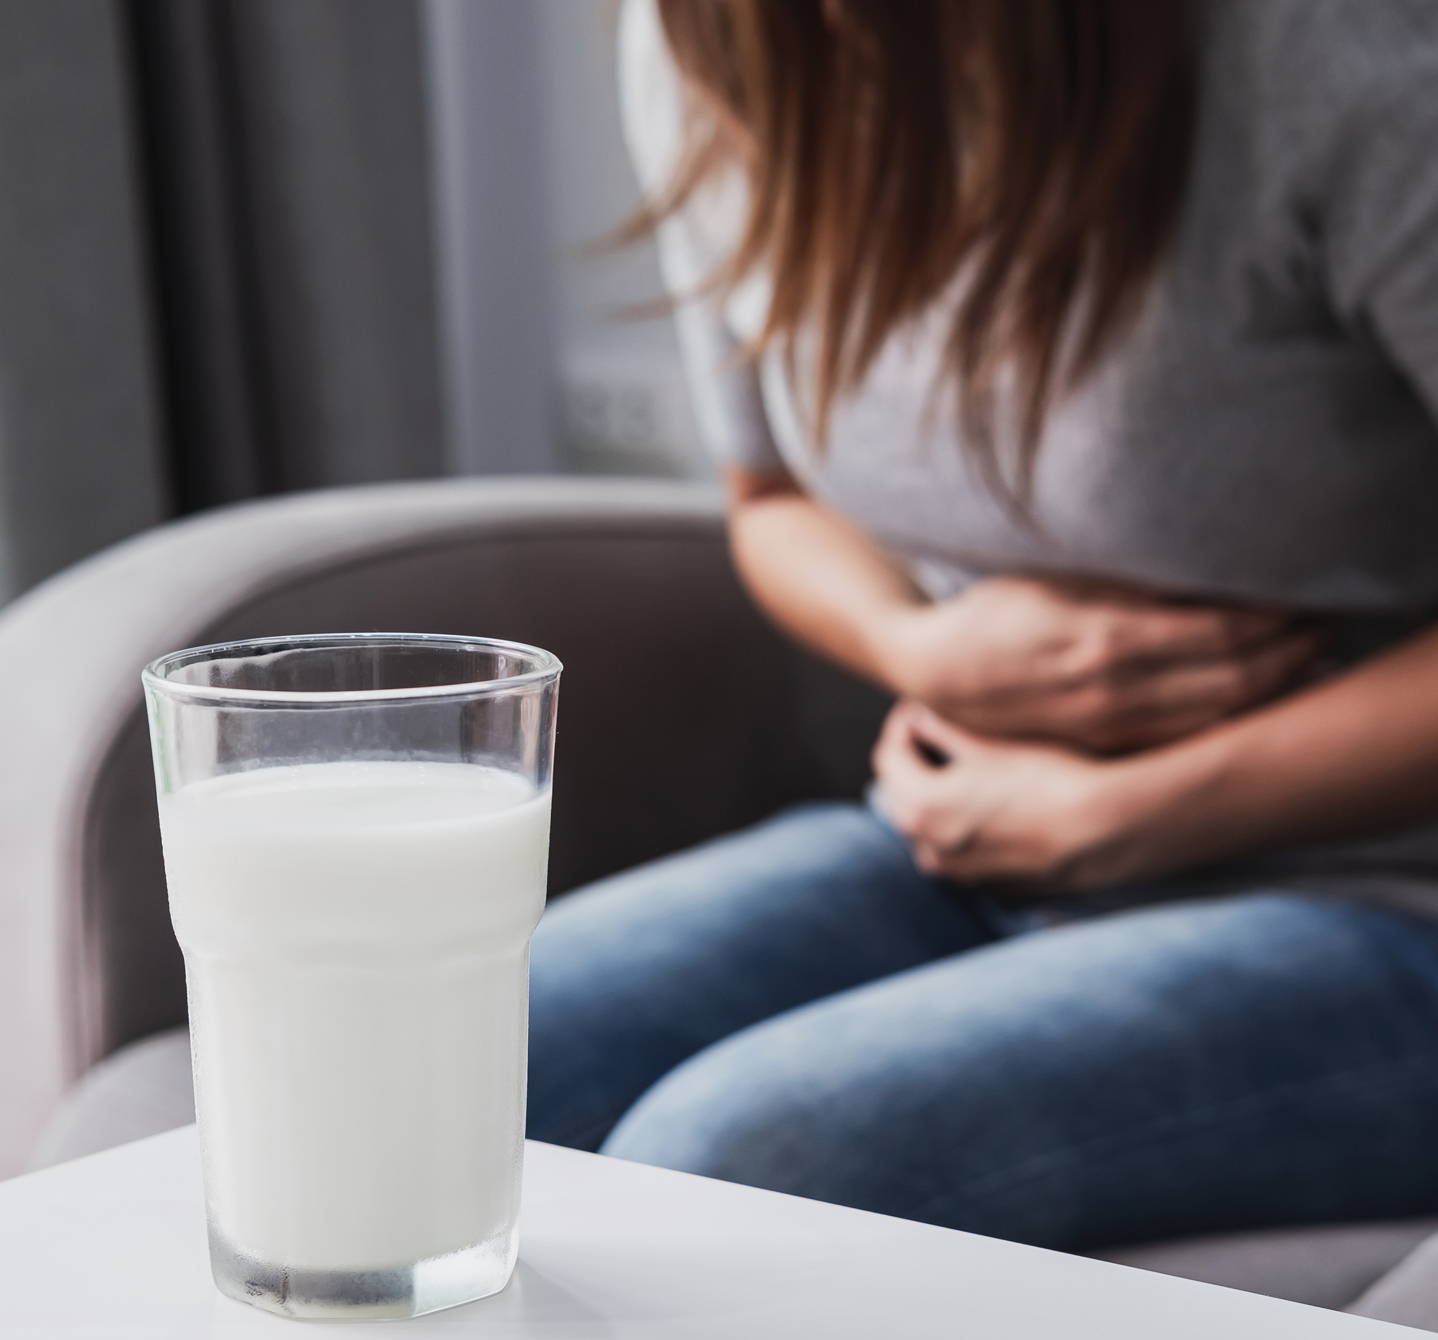 Lebensmittelallergie oder -unverträglichkeit? Dieses Glas Milch könnte der Frau Magenschmerzen bereiten, wenn sie an Laktoseintoleranz leidet.